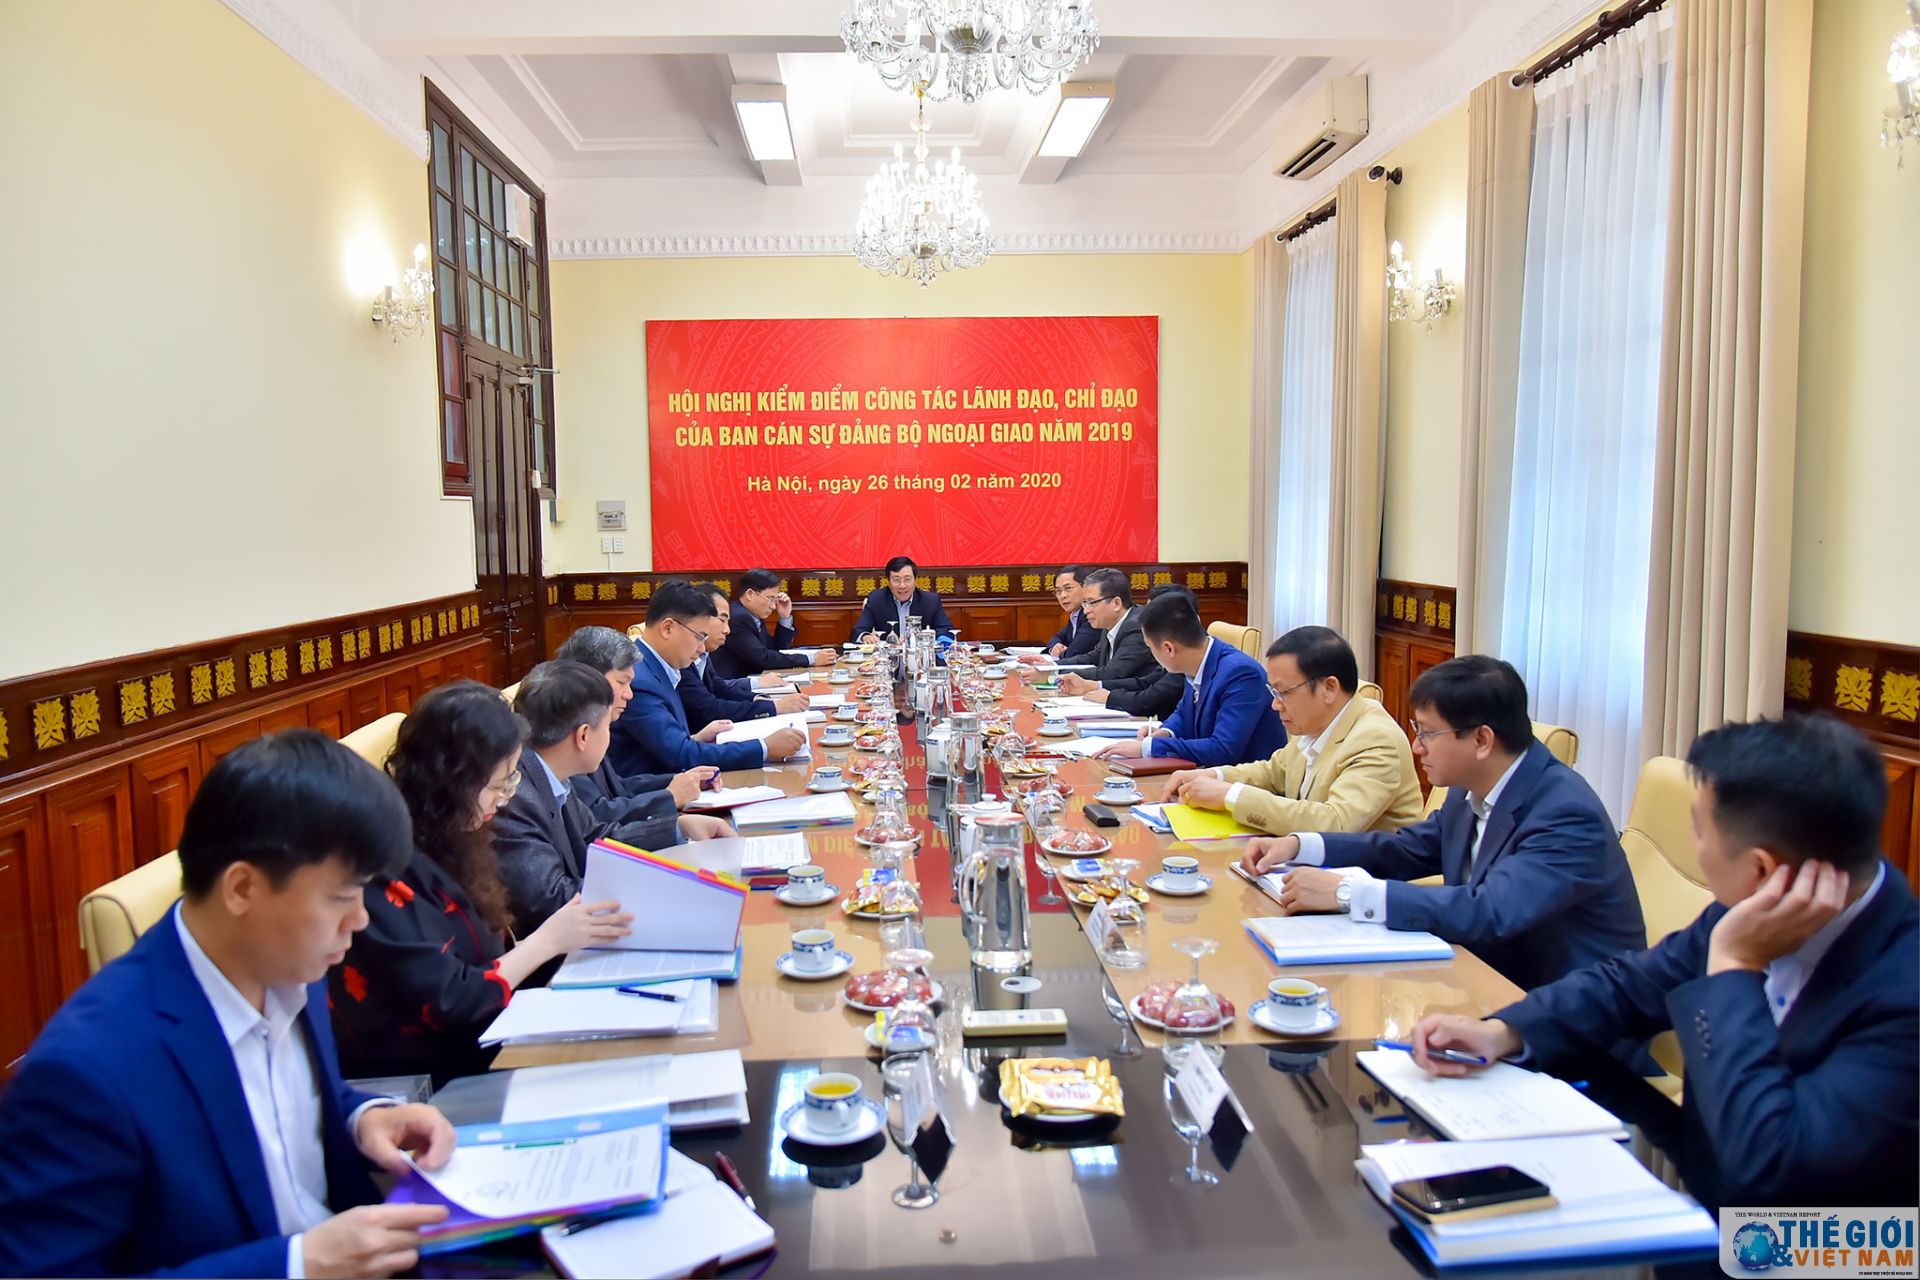 Hội nghị kiểm điểm công tác lãnh đạo, chỉ đạo của Ban cán sự đảng Bộ Ngoại giao năm 2019